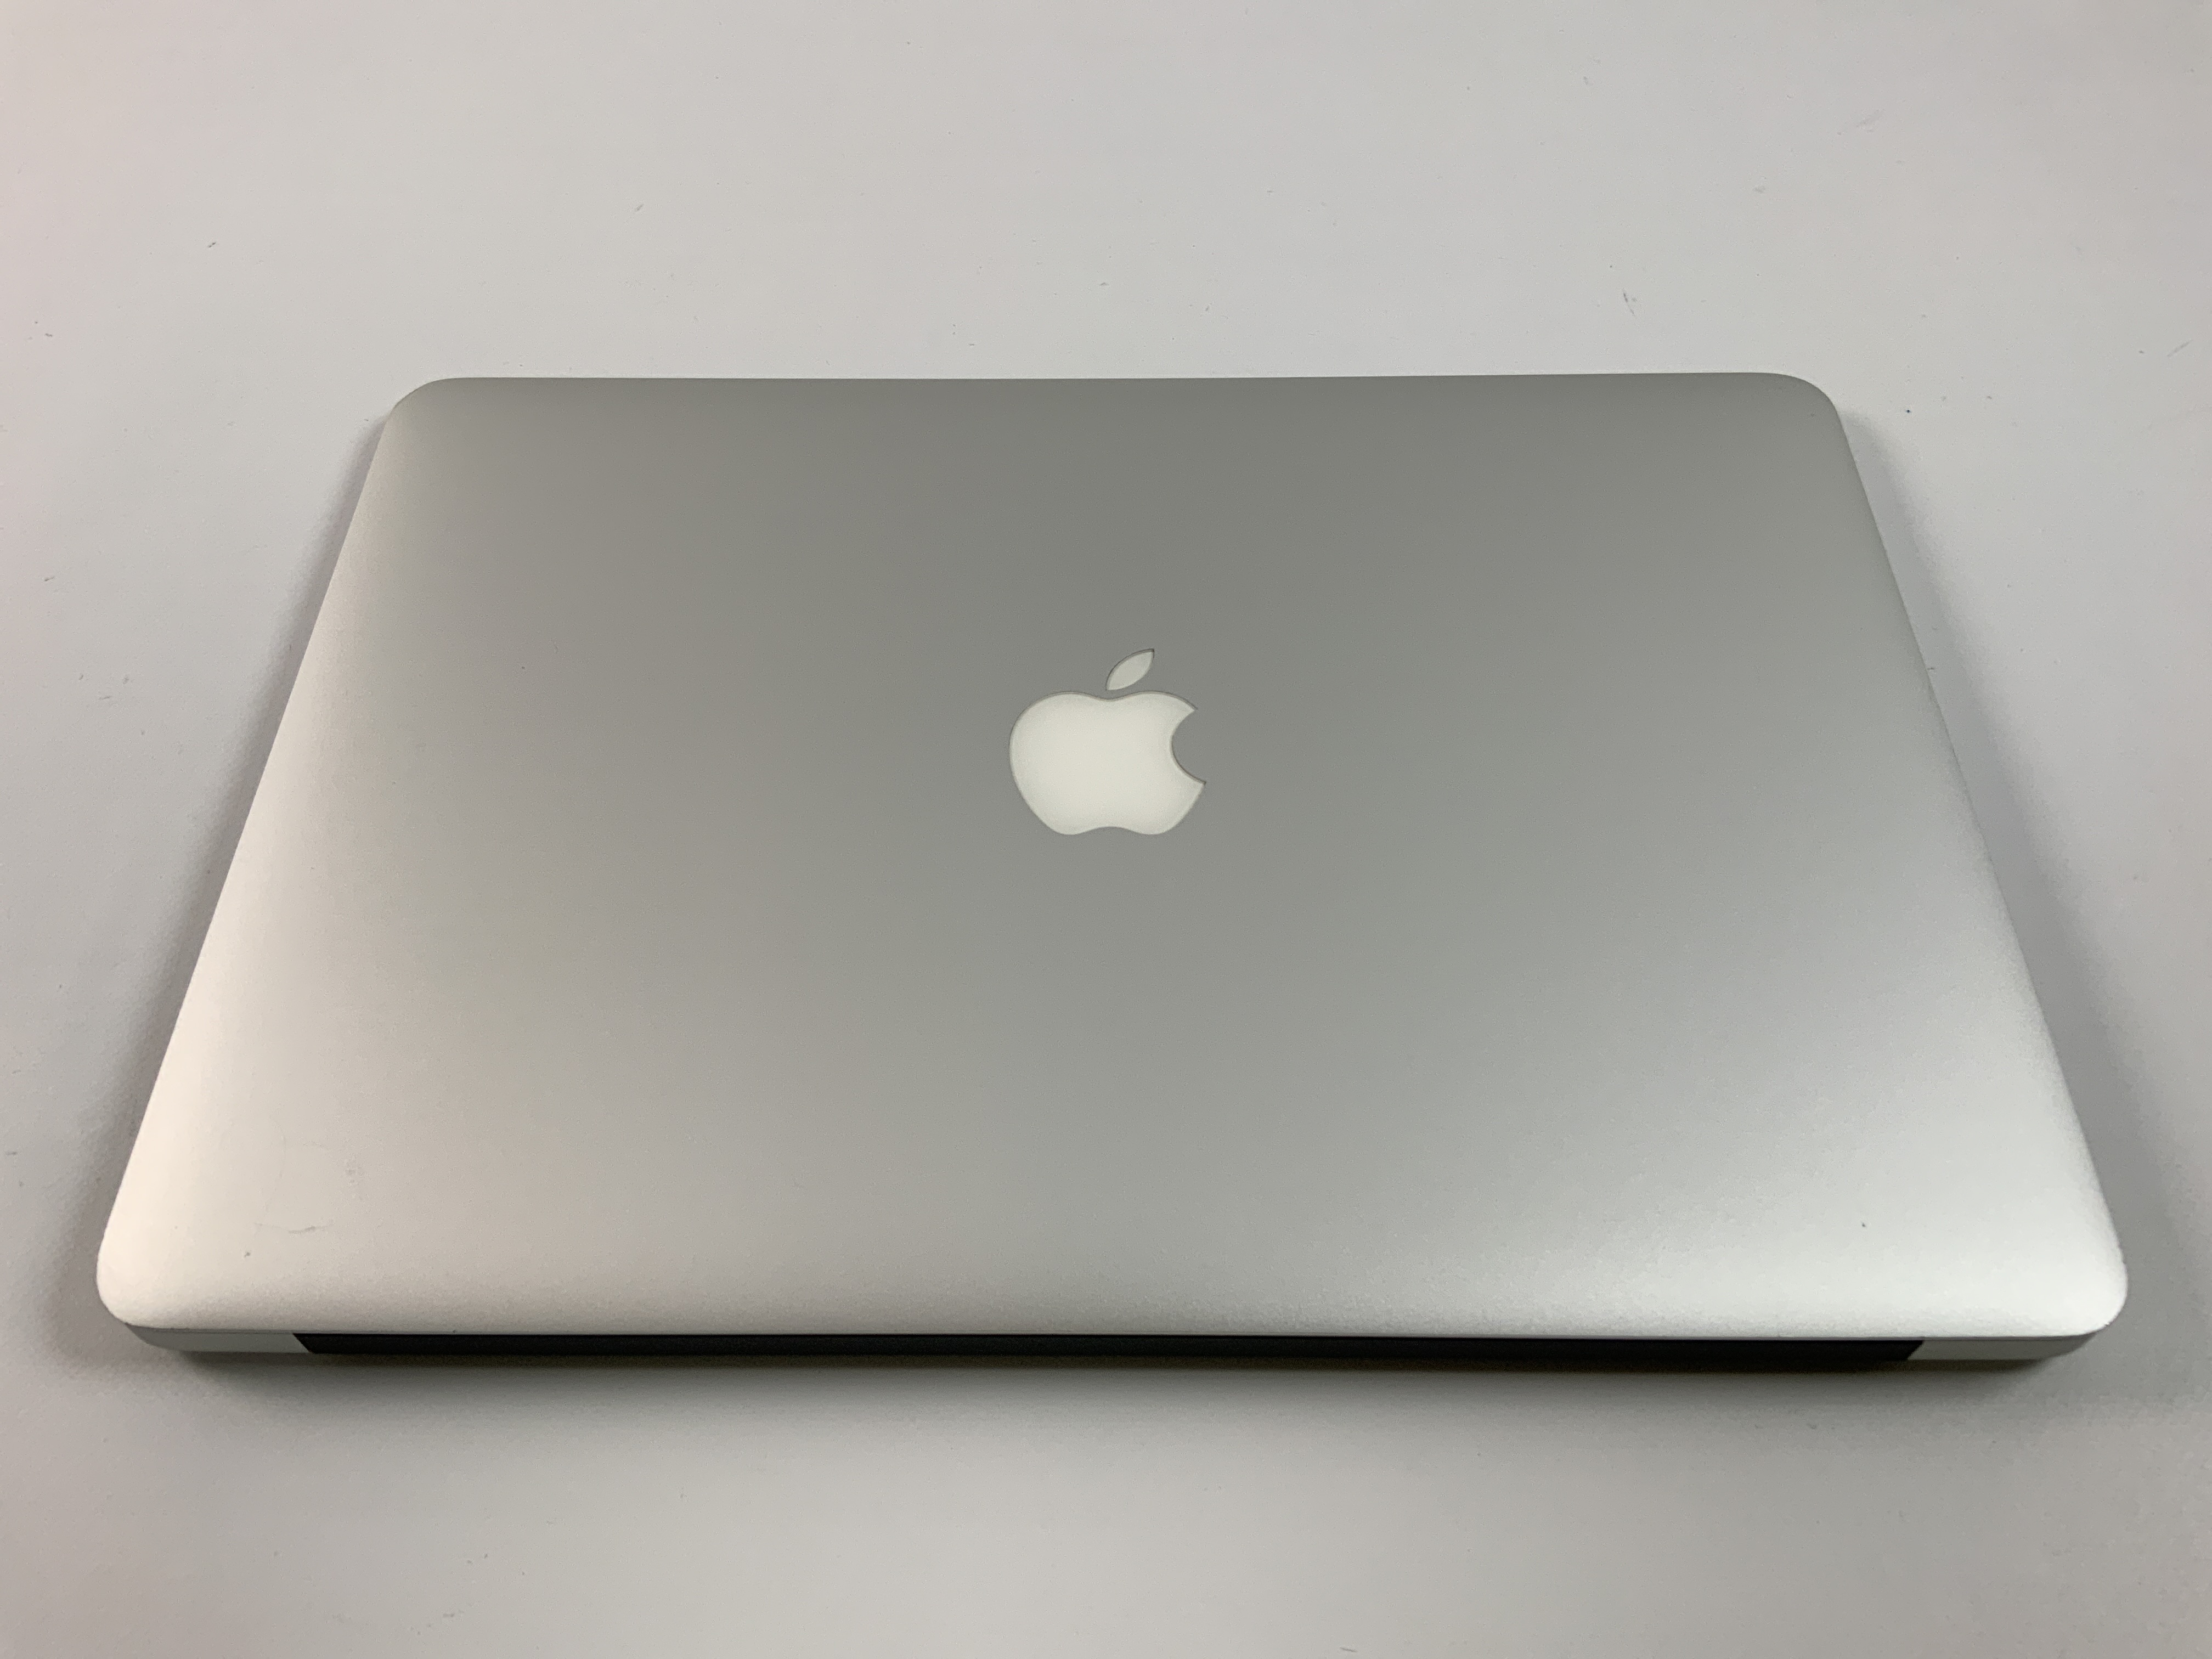 MacBook Air 13" Mid 2017 (Intel Core i5 1.8 GHz 8 GB RAM 256 GB SSD), Intel Core i5 1.8 GHz, 8 GB RAM, 256 GB SSD, immagine 2